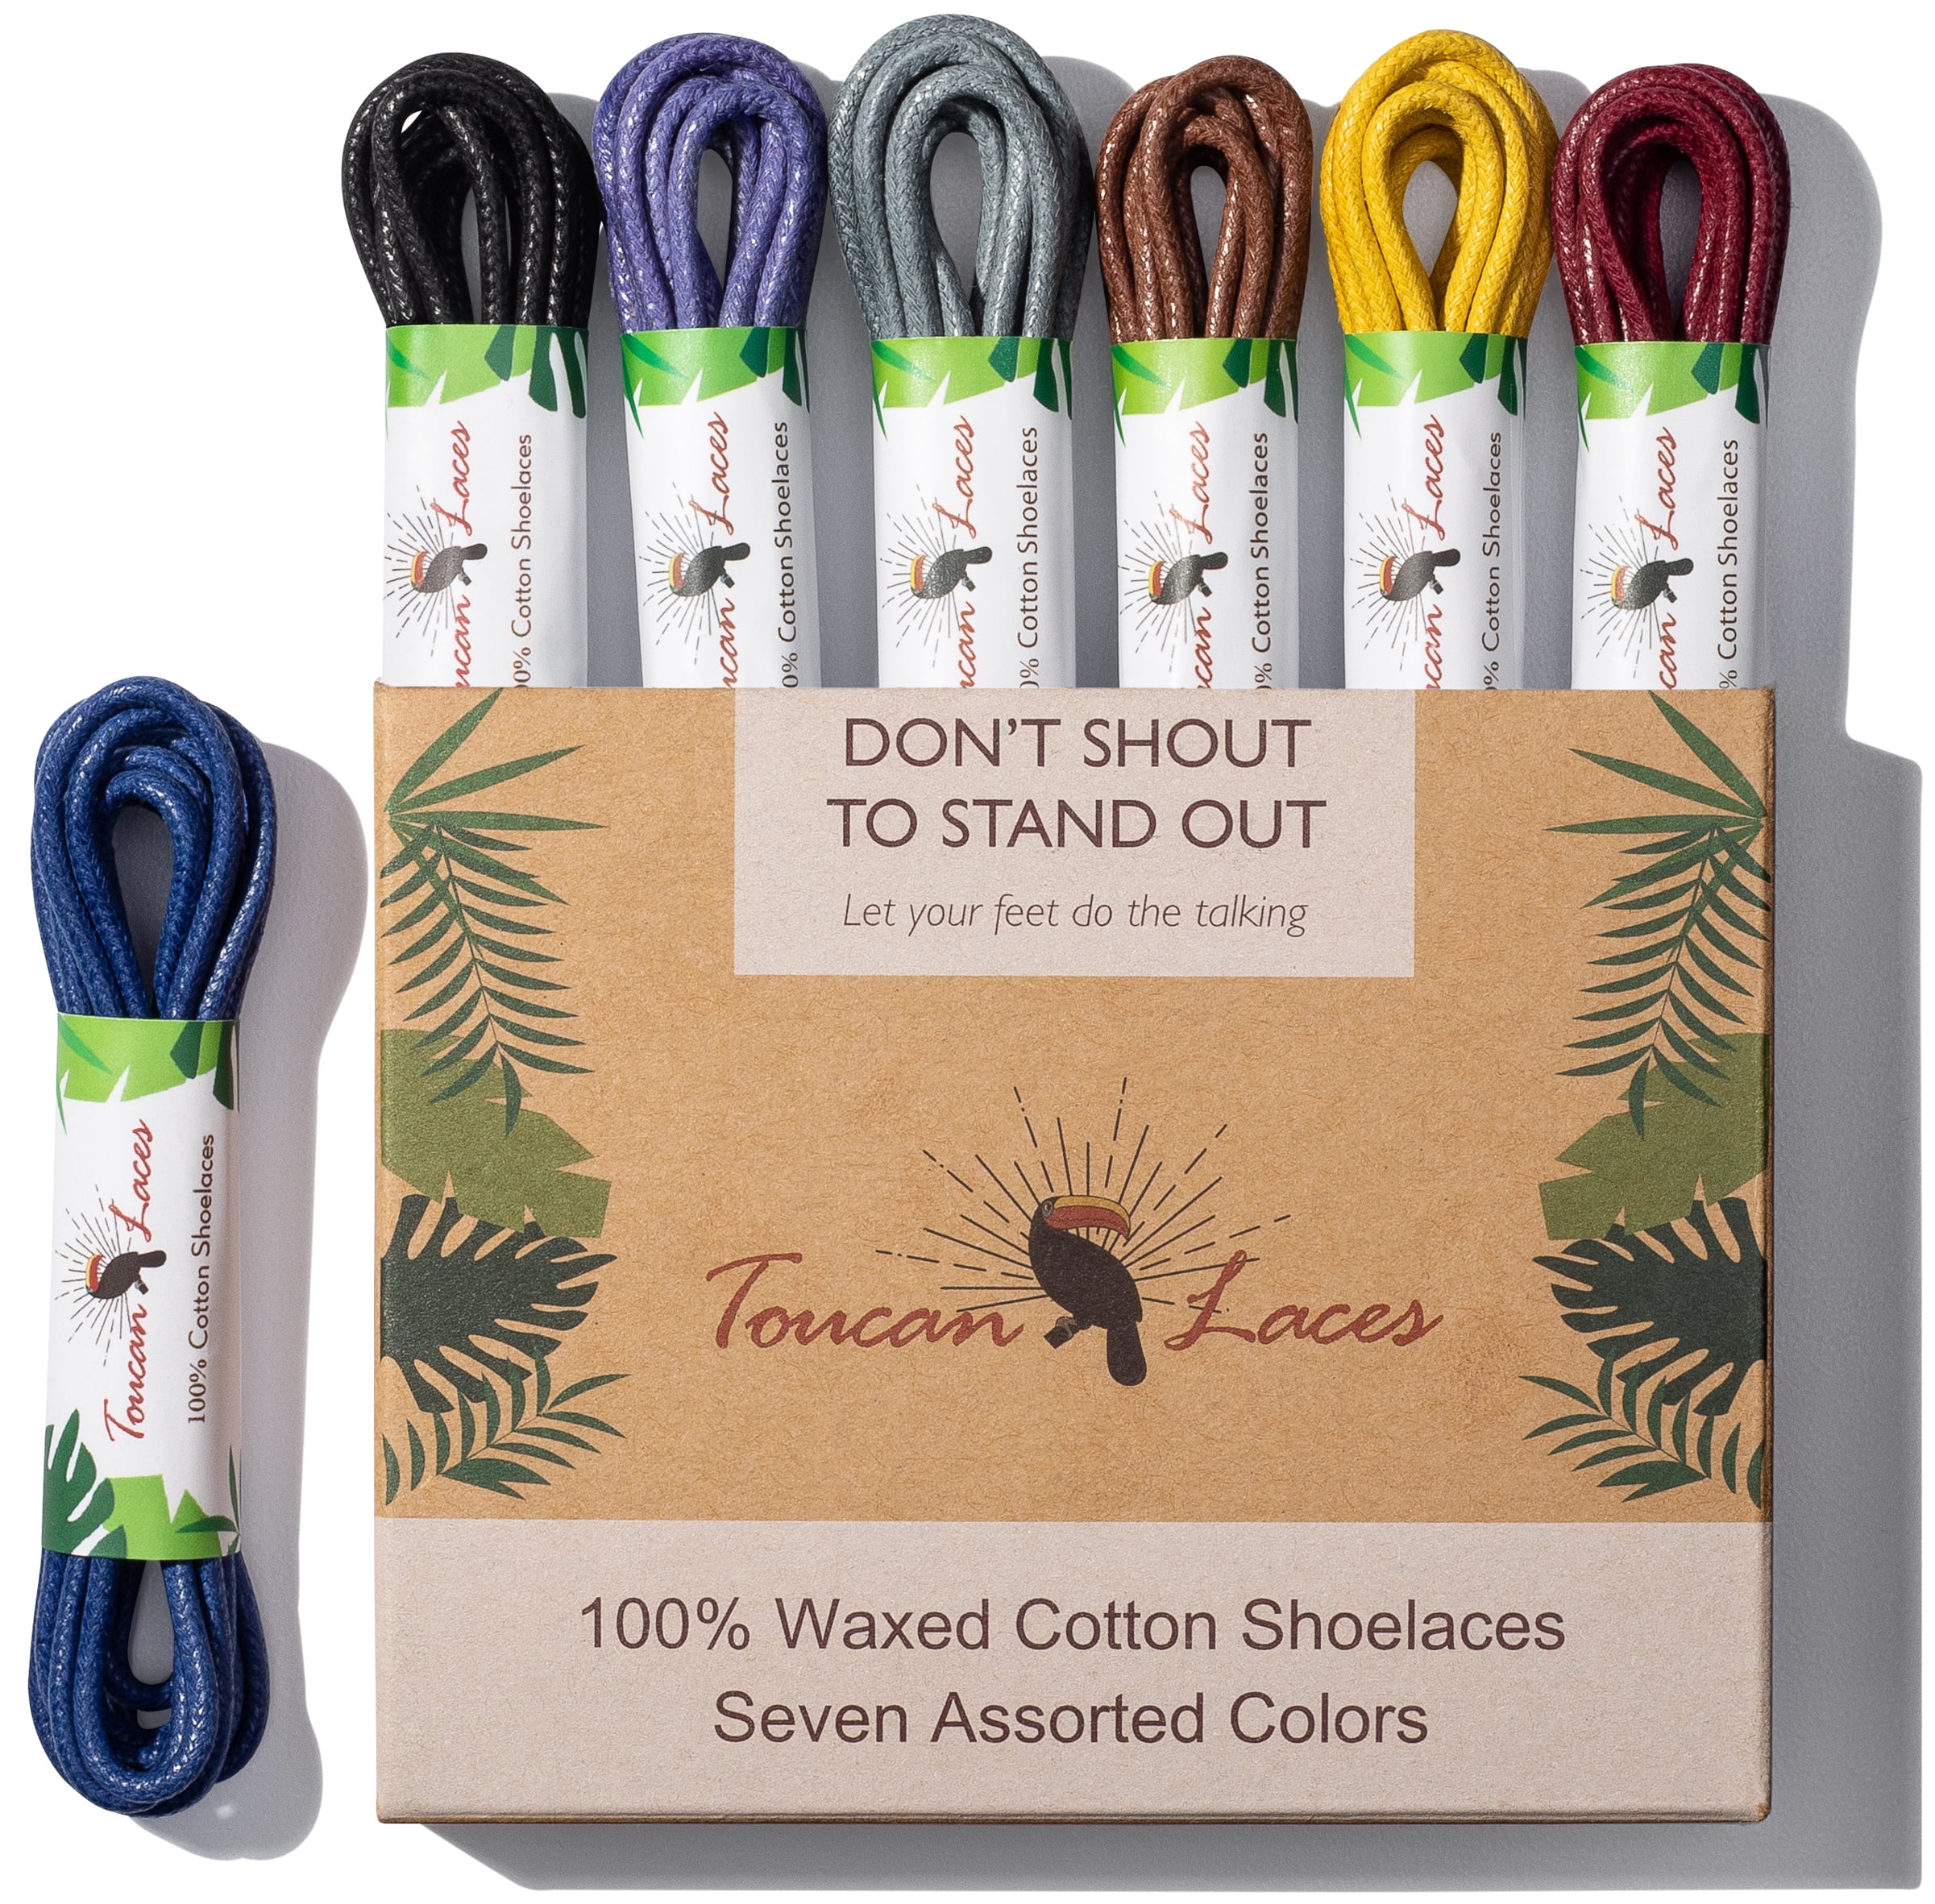 Sechunk flat Cotton Shoelace set of 2 pairs 29 colors Multiple lengths Shoe lace